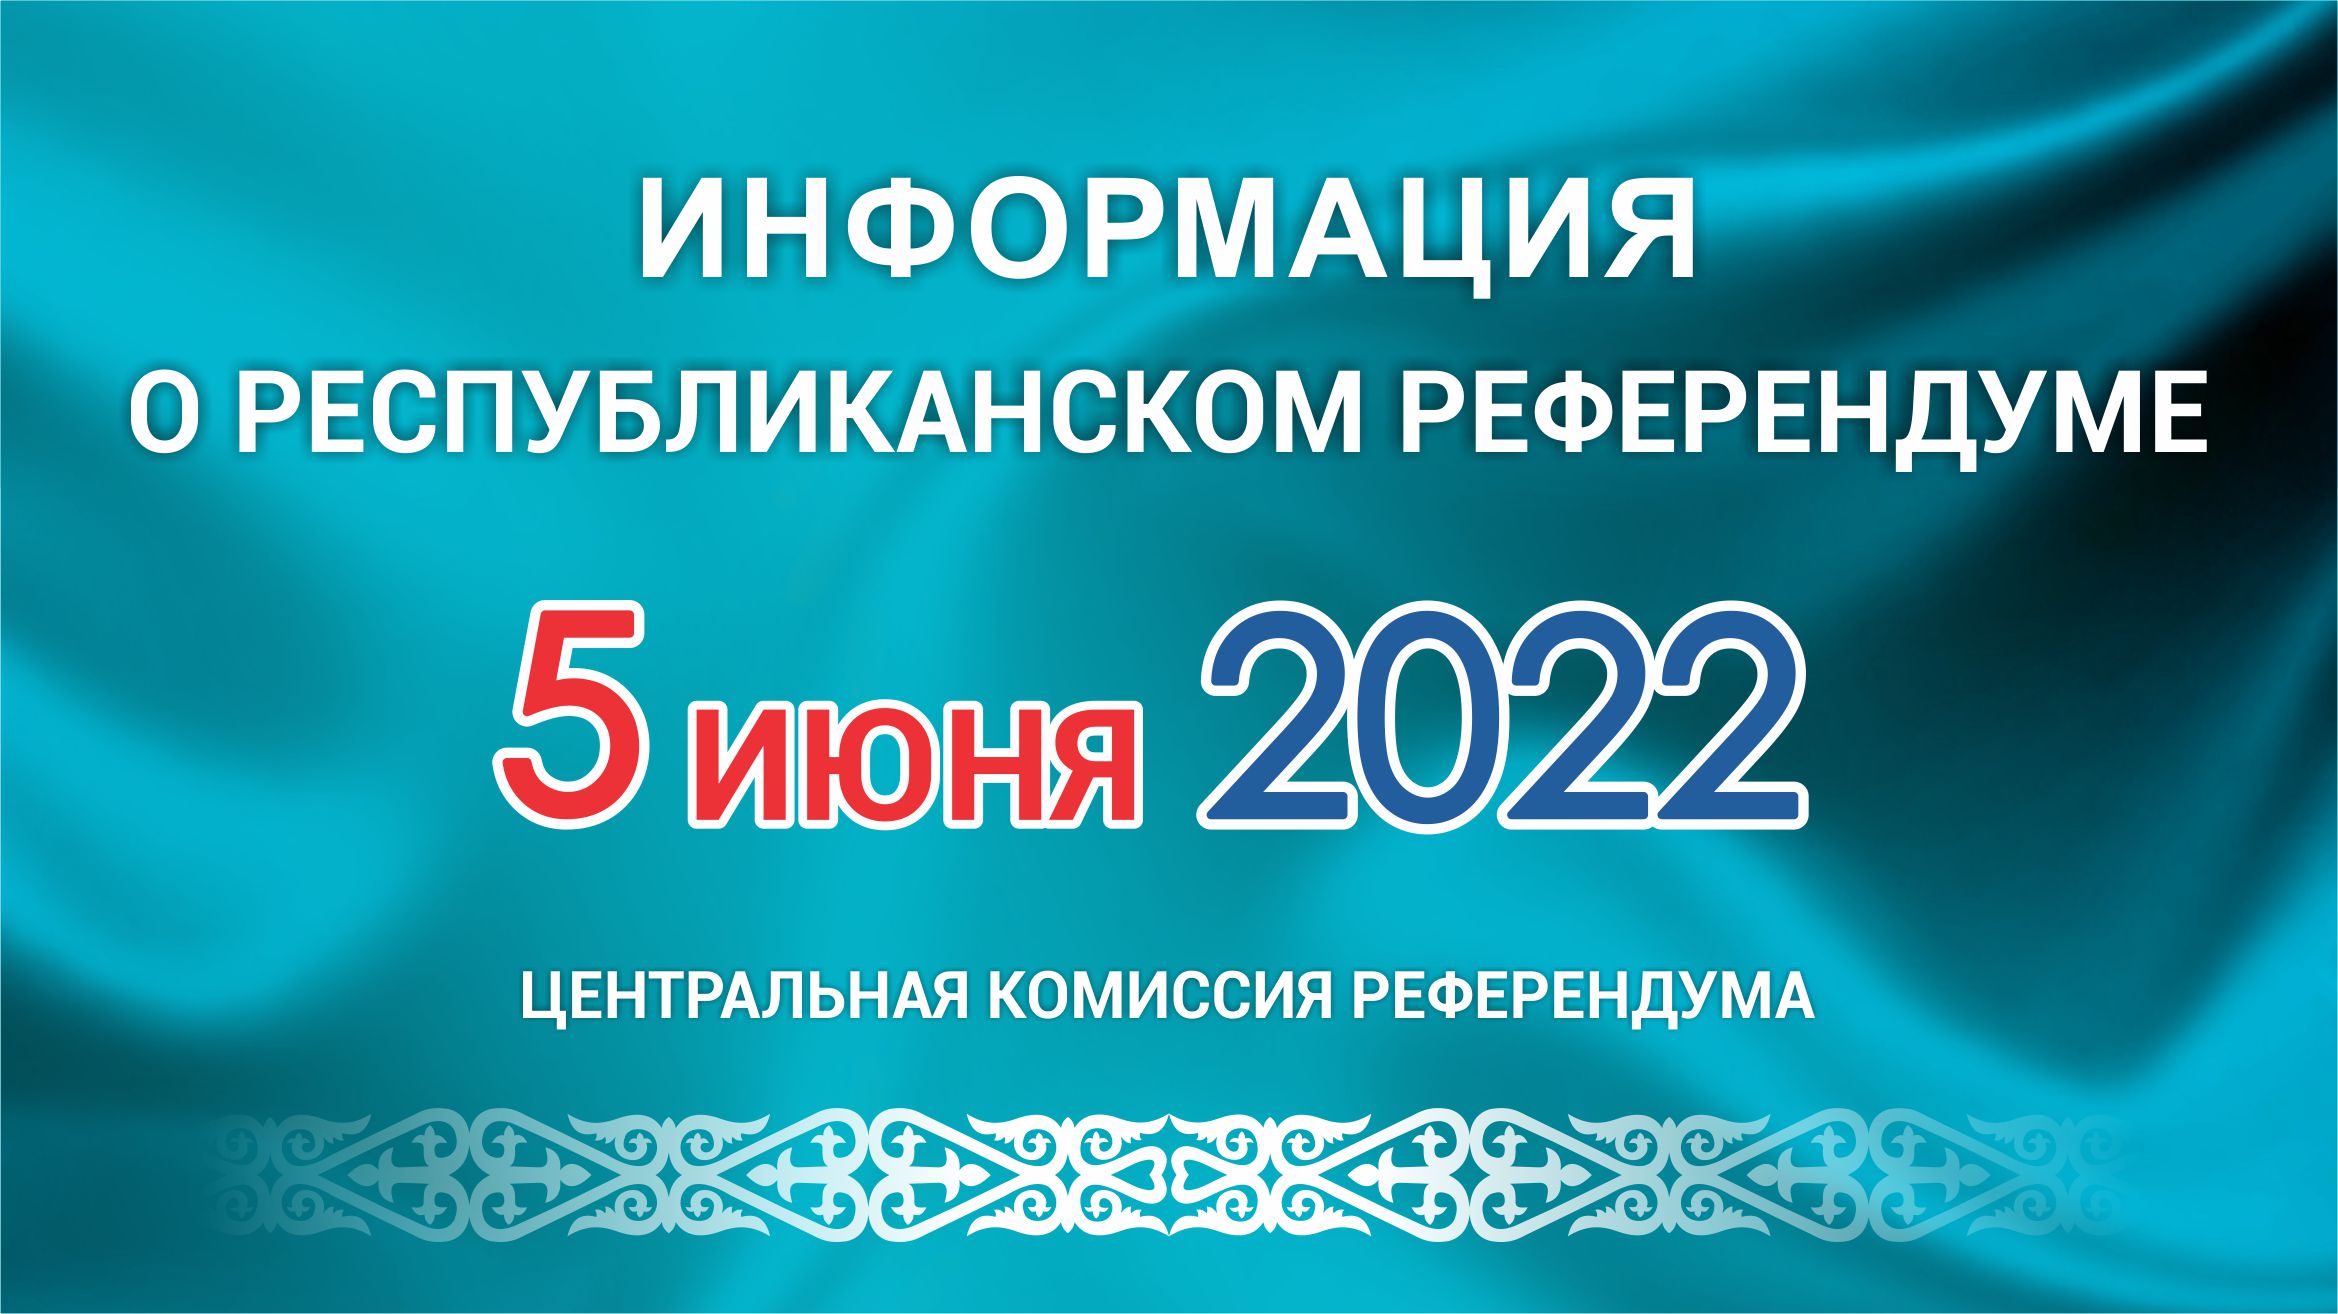 ОБРАЩЕНИЕ Центральной комиссии референдума Республики Казахстан